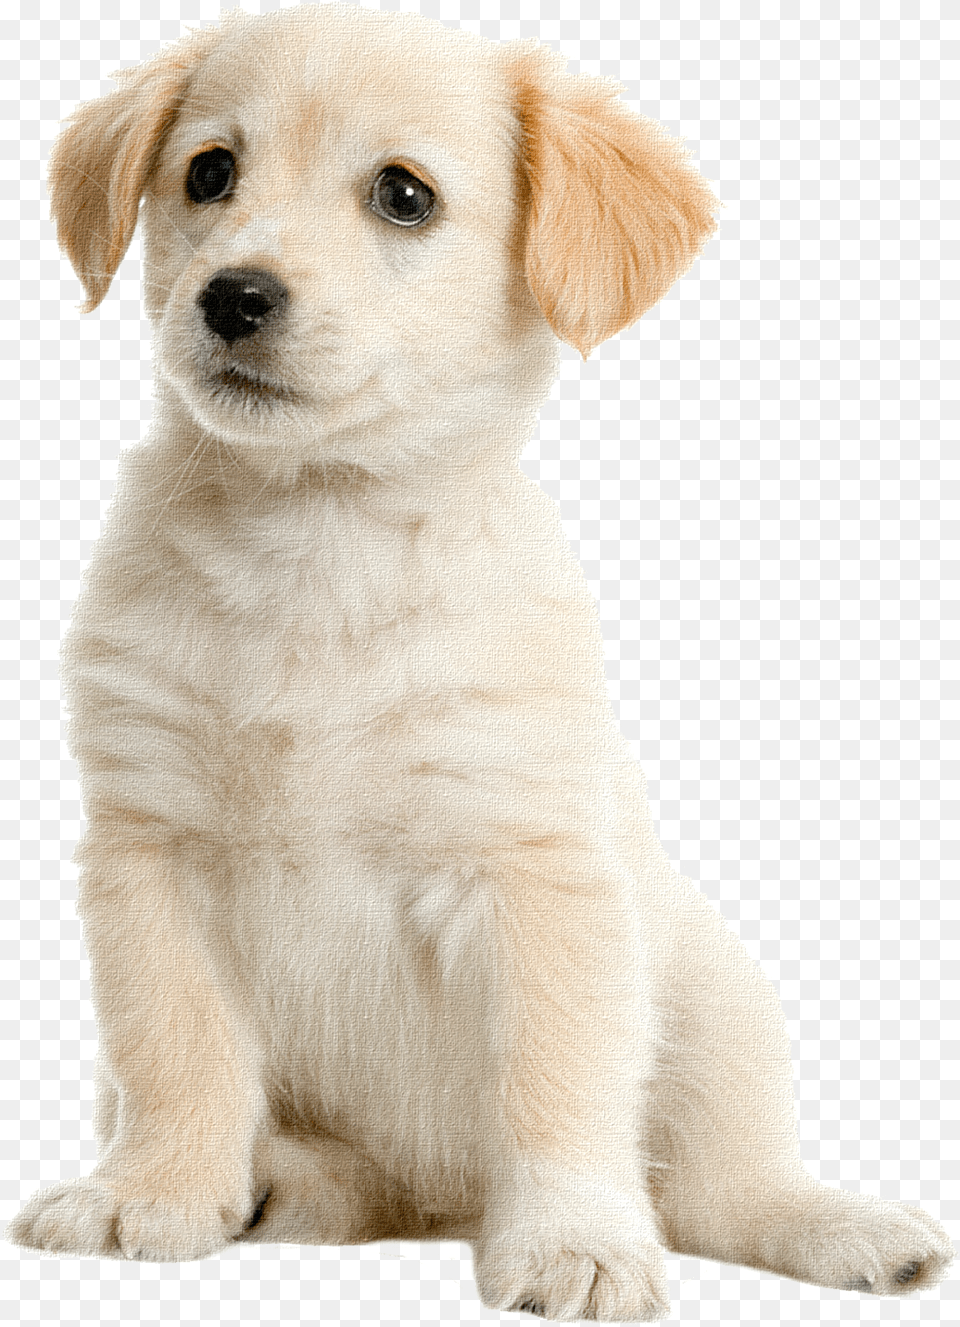 Labrador Retriever Cream Labrador, Animal, Canine, Dog, Mammal Free Transparent Png